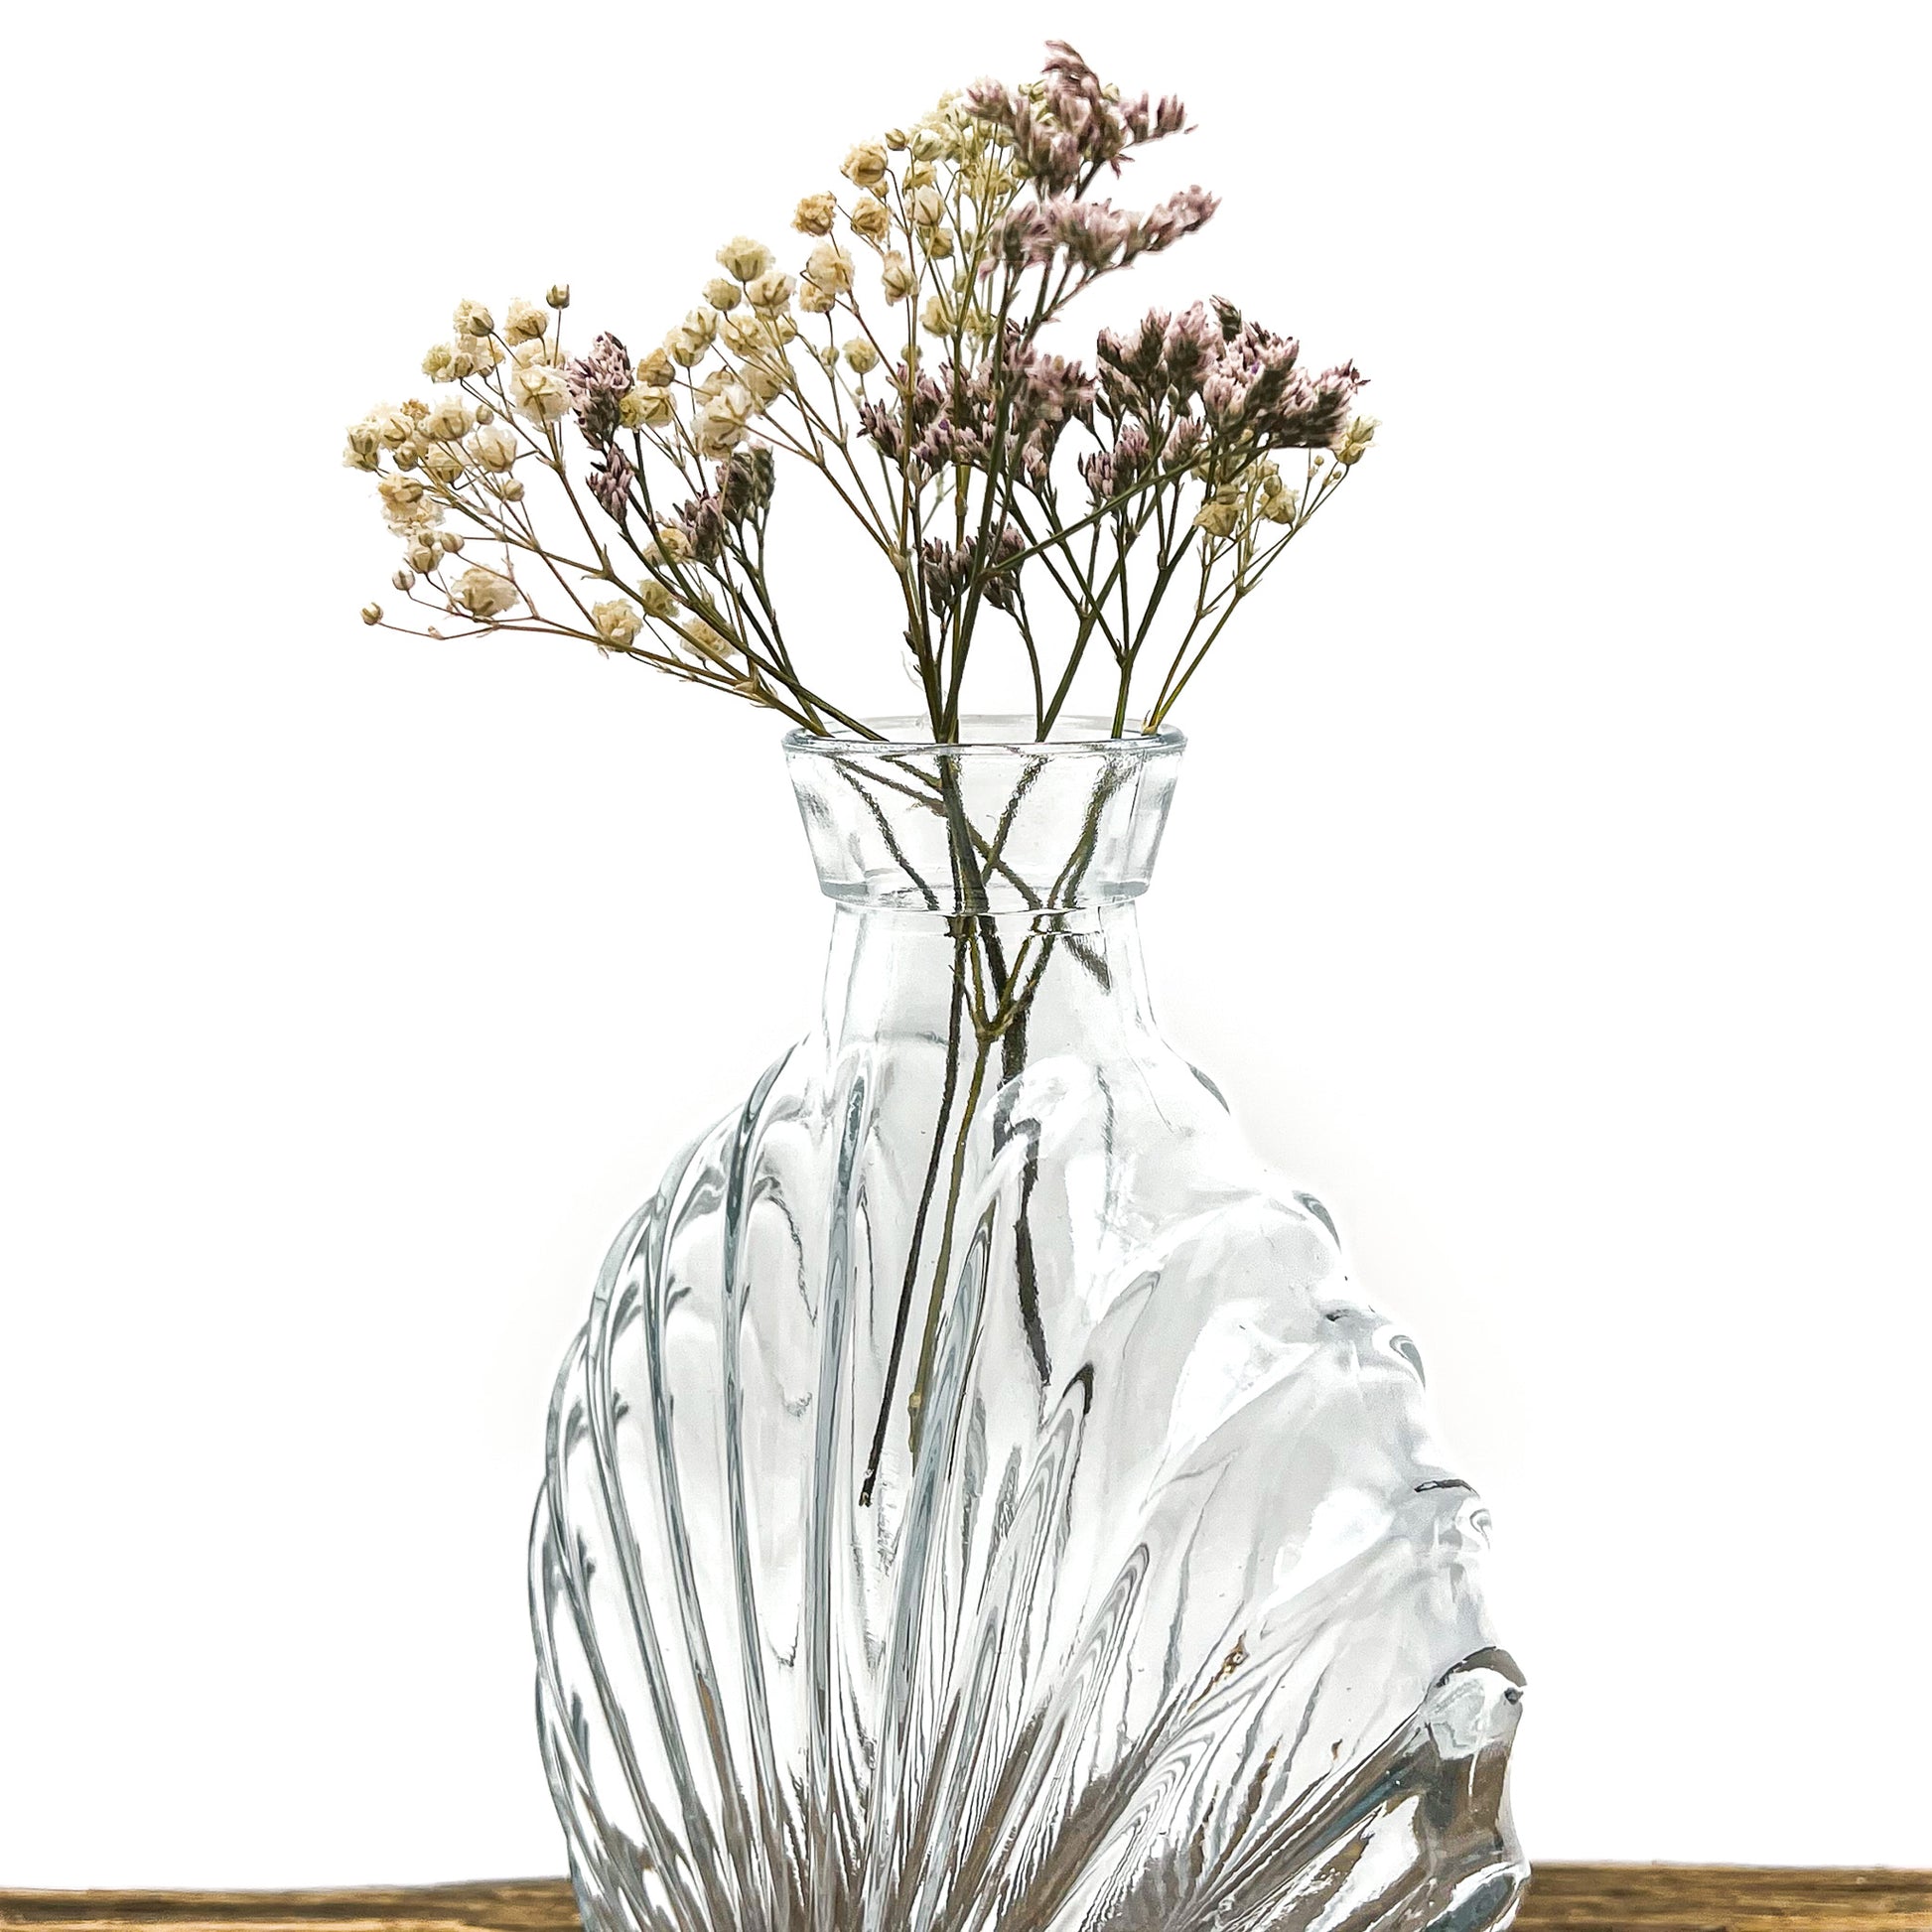 Vase en verre recyclé translucide au design vintage. Largeur 12.5 cm - Hauteur 17 cm. Livré avec fleurs séchées offertes.